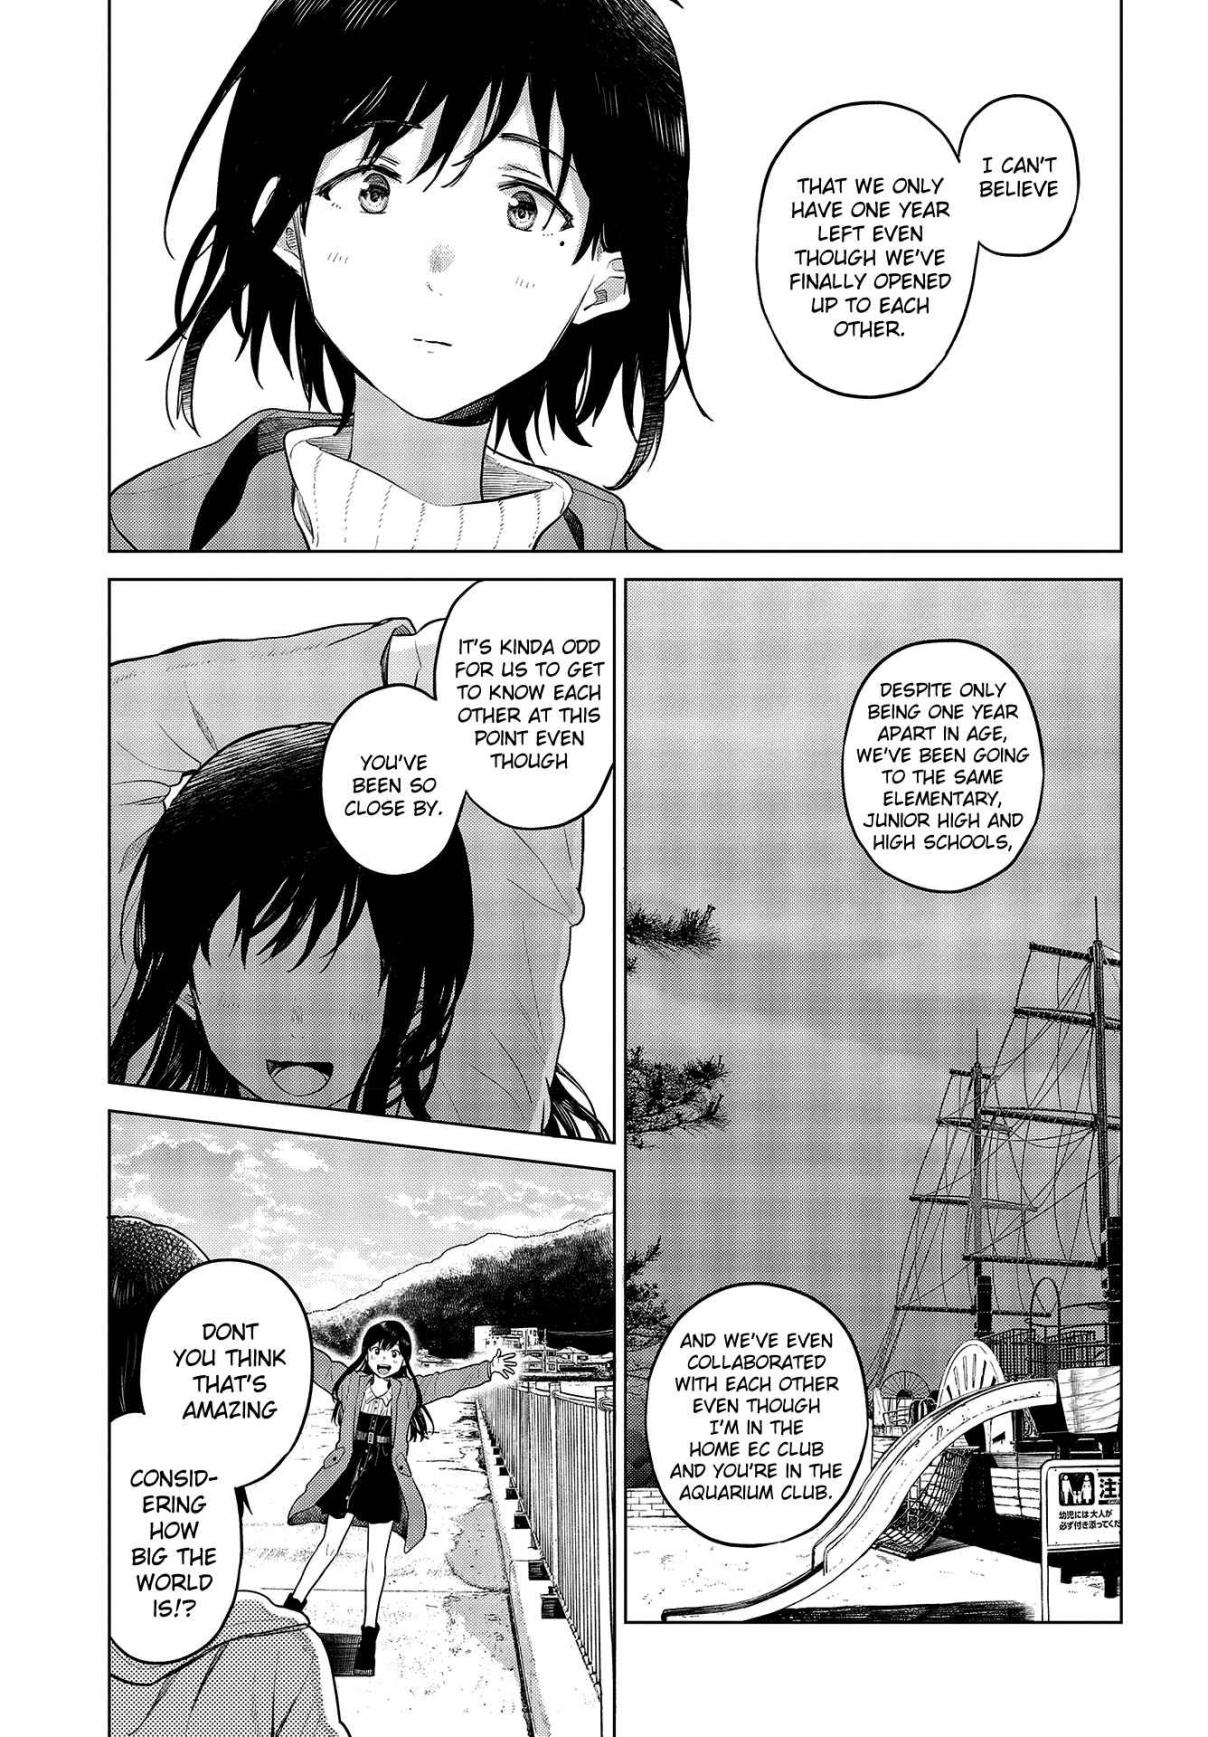 Nettaigyo wa Yuki ni Kogareru Vol. 5 Ch. 20 Kaede Hirose Doesn't Realize It.